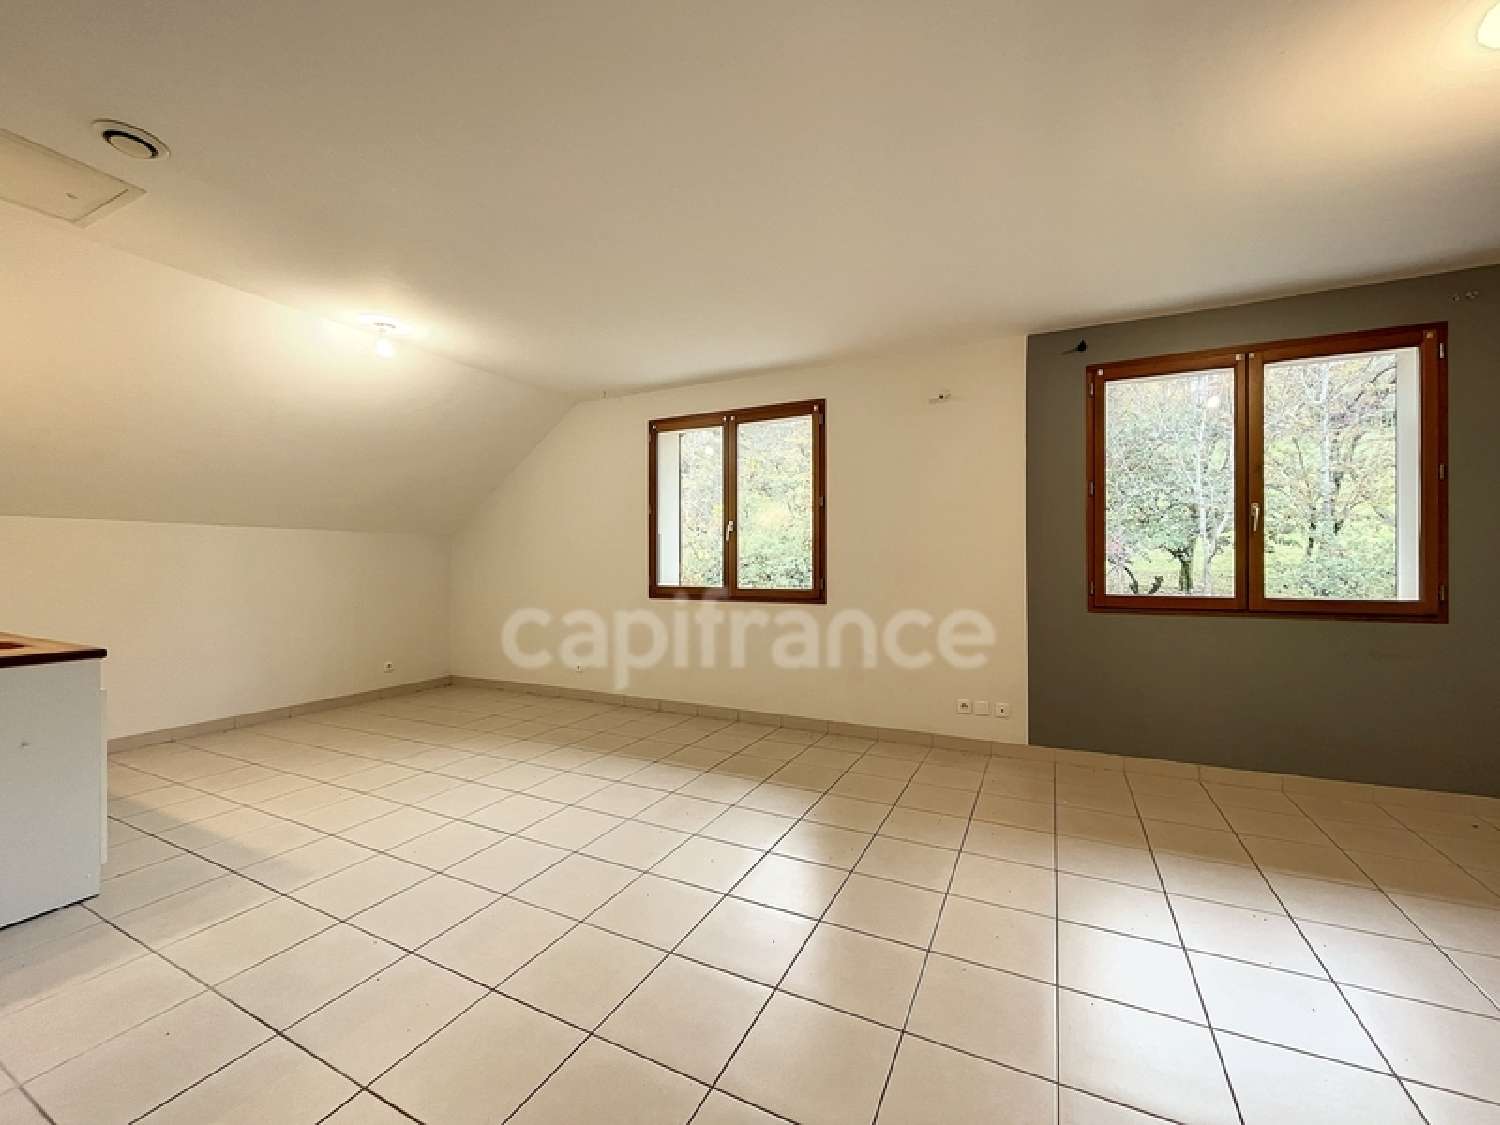  for sale apartment Vimines Savoie 3